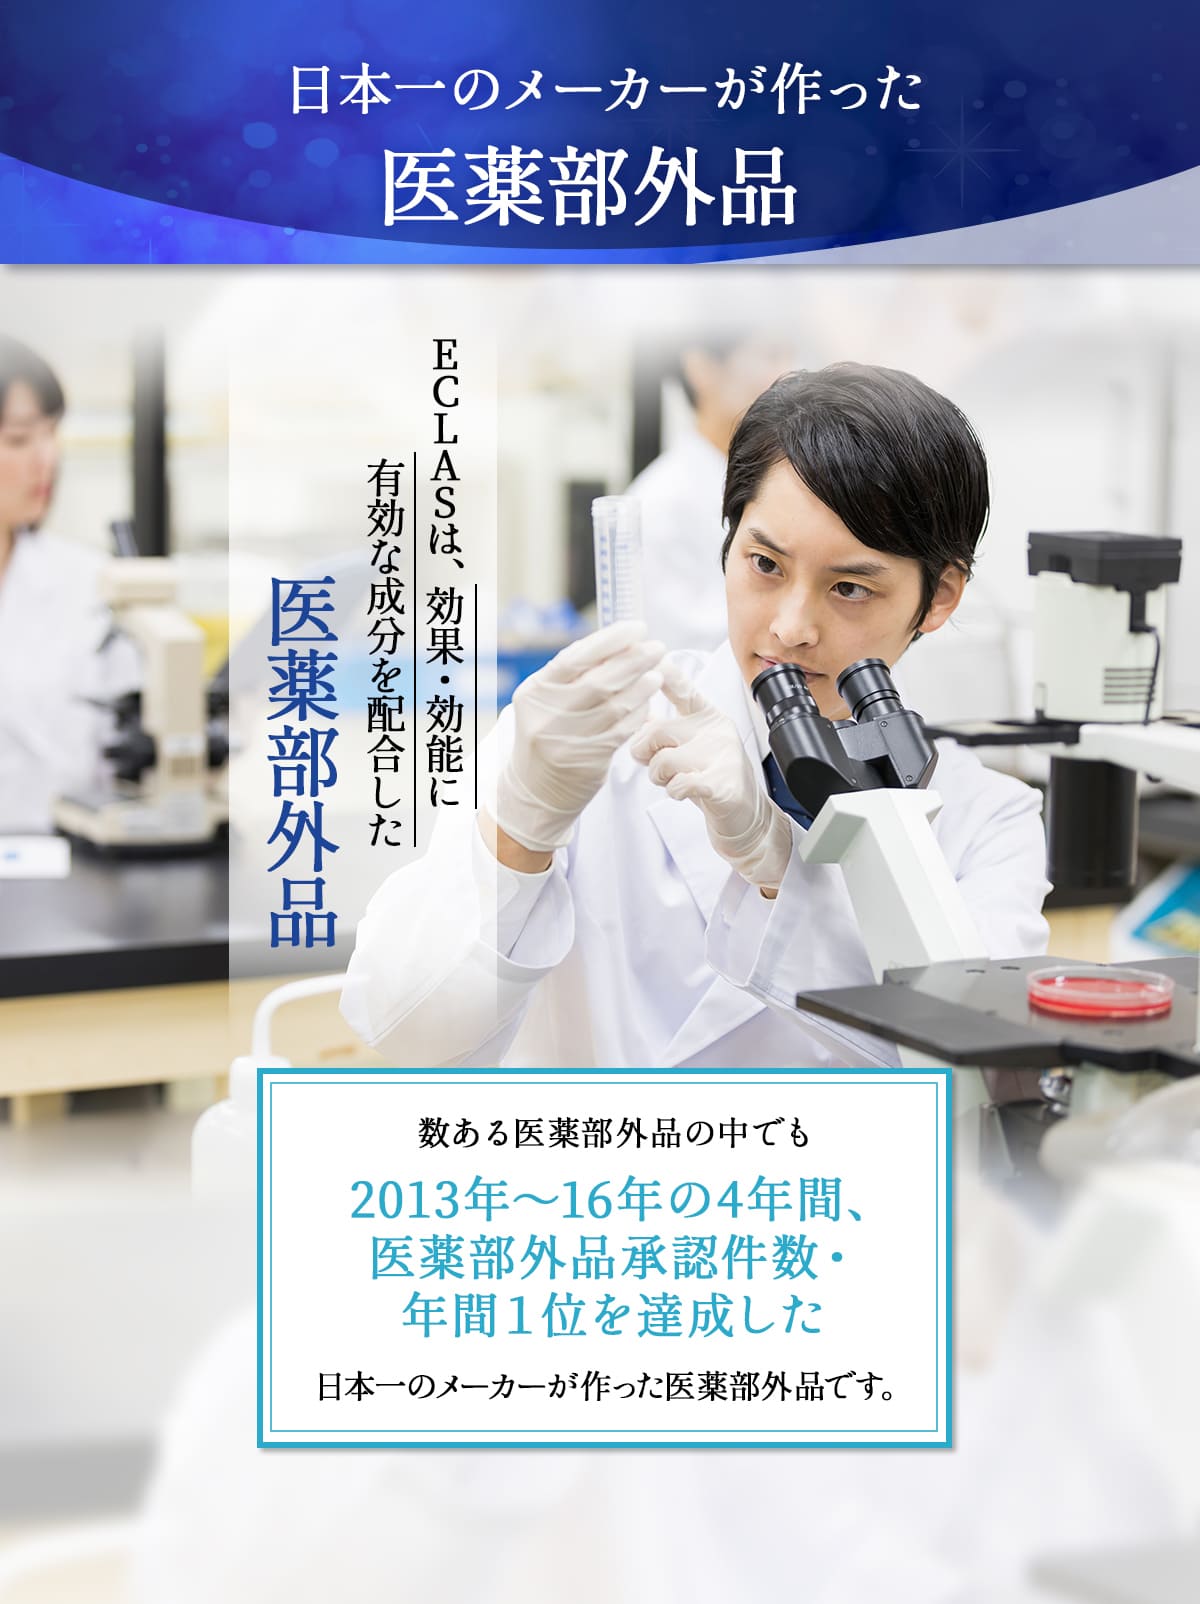 日本一のメーカーが作った医薬部外品。
		ECLAS（エクラス）は、効果・効能に有効な成分を配合した医薬部外品。
		数ある医薬部外品の中でも2013年～16年の4年間、医薬部外品承認件数・年間1位を達成した日本一のメーカーが作った医薬部外品です。